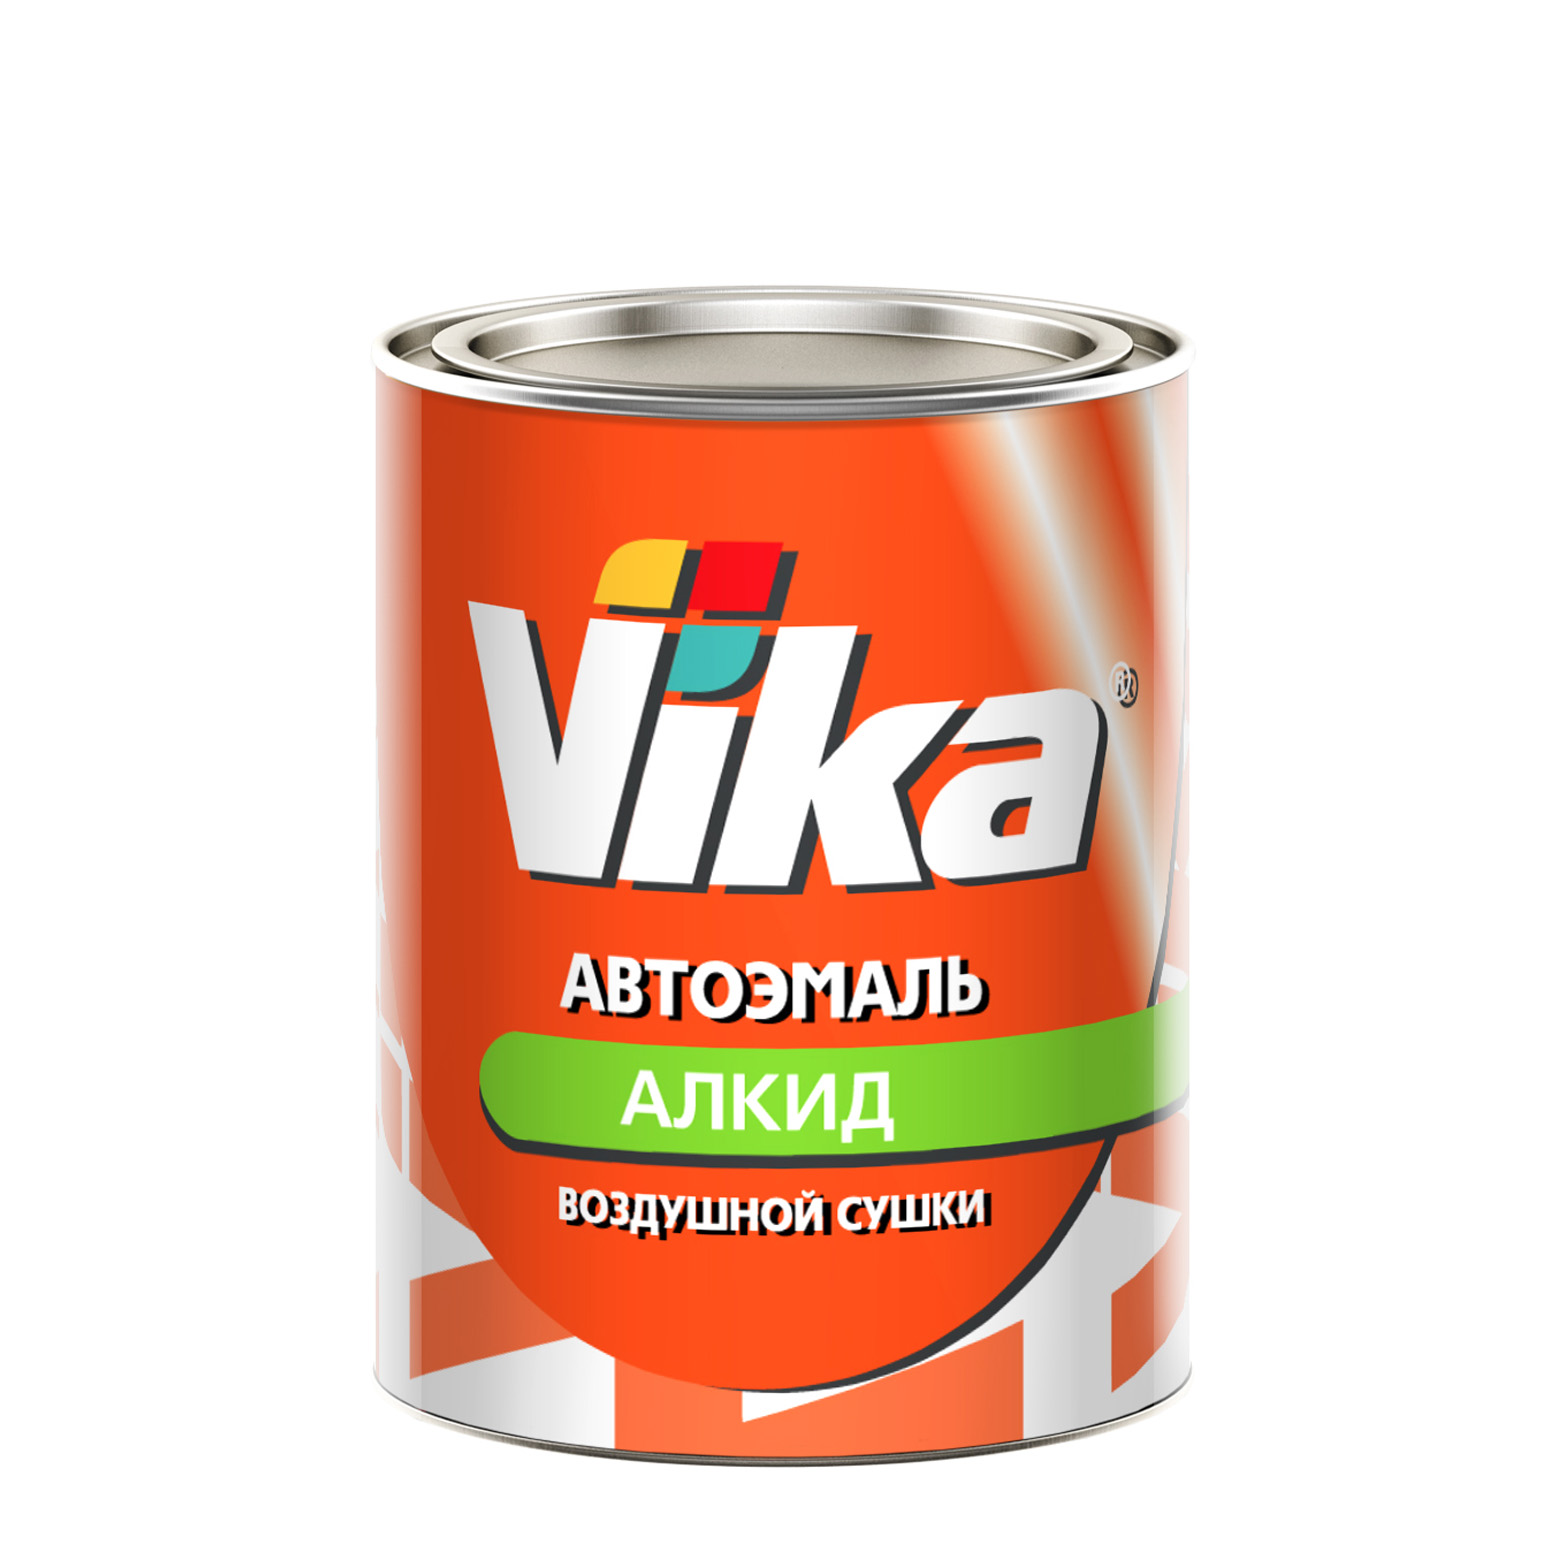 Фото 1 - Автоэмаль Vika-60, цвет 42 Красная алкидная глянцевая естественной сушки - 0,8 кг.